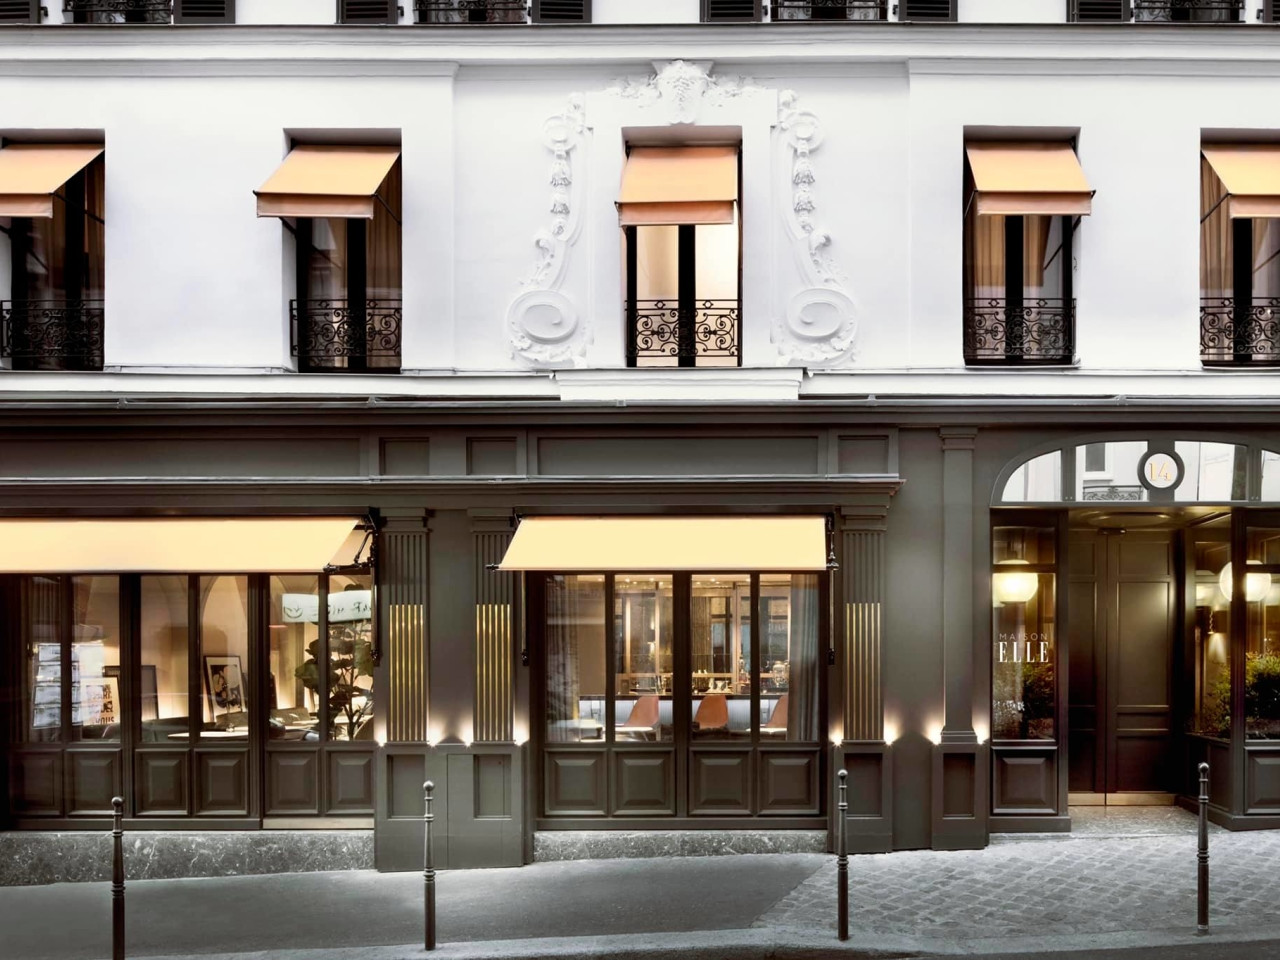 La rivista di moda Elle ha aperto il suo primo hotel a Parigi